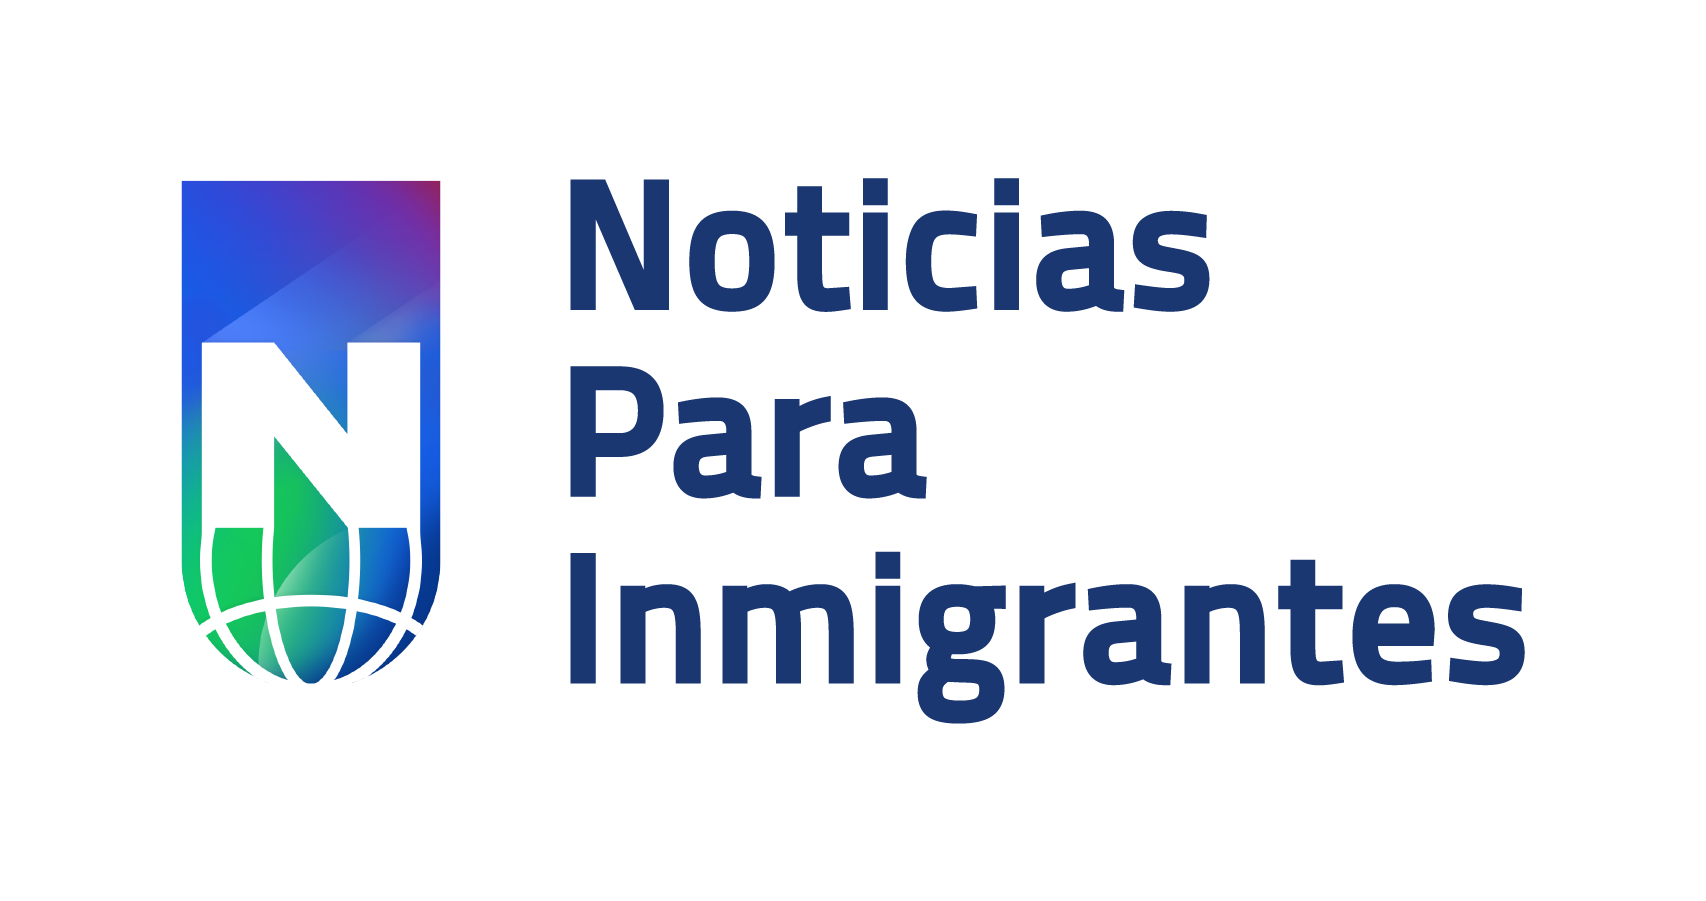 Noticias para Inmigrantes